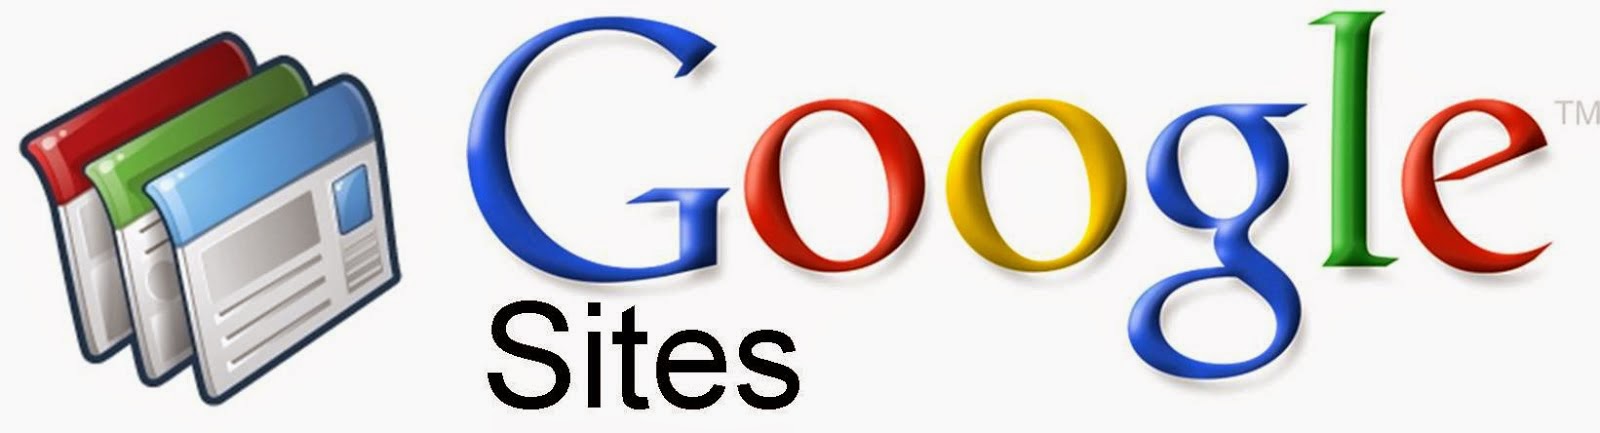 Nuestro Google Sites